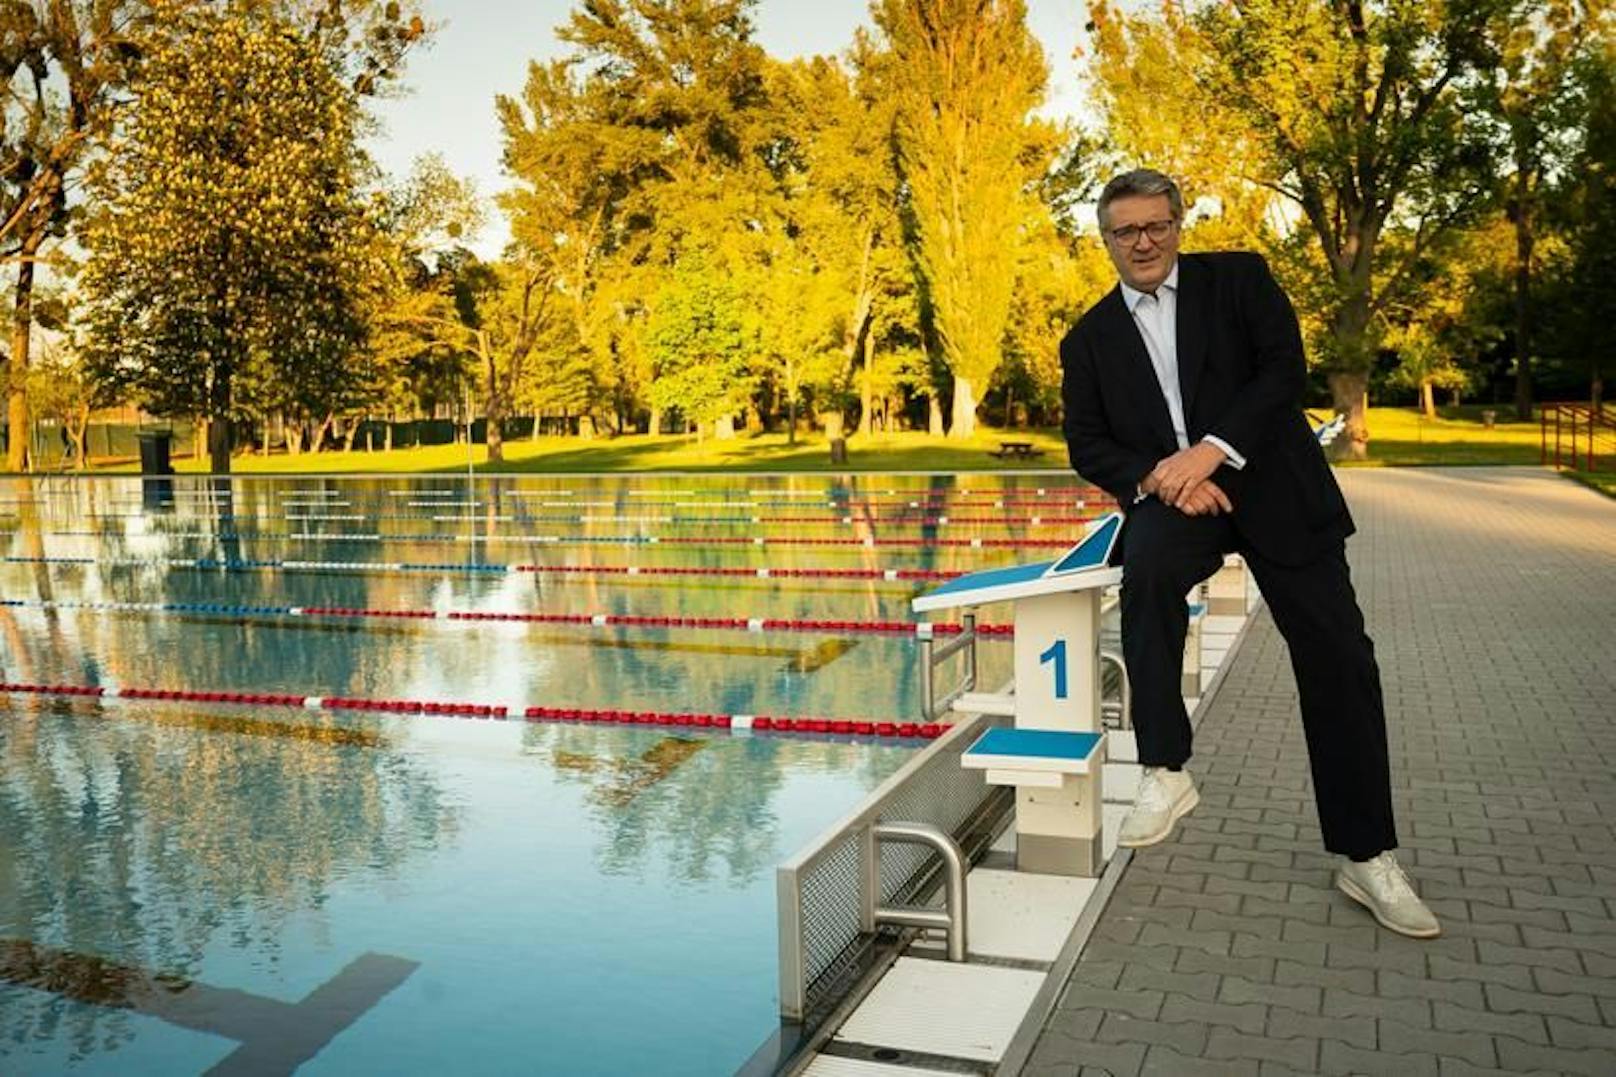 Hinter der Tribünenanlage des Sprungbeckens im Stadionbad (Leopoldstadt) wurde in den vergangenen Monaten ein zusätzliches 50-Meter-Becken errichtet. Heute wurde es durch Sportstadtrat Peter Hacker (SPÖ) eröffnet.